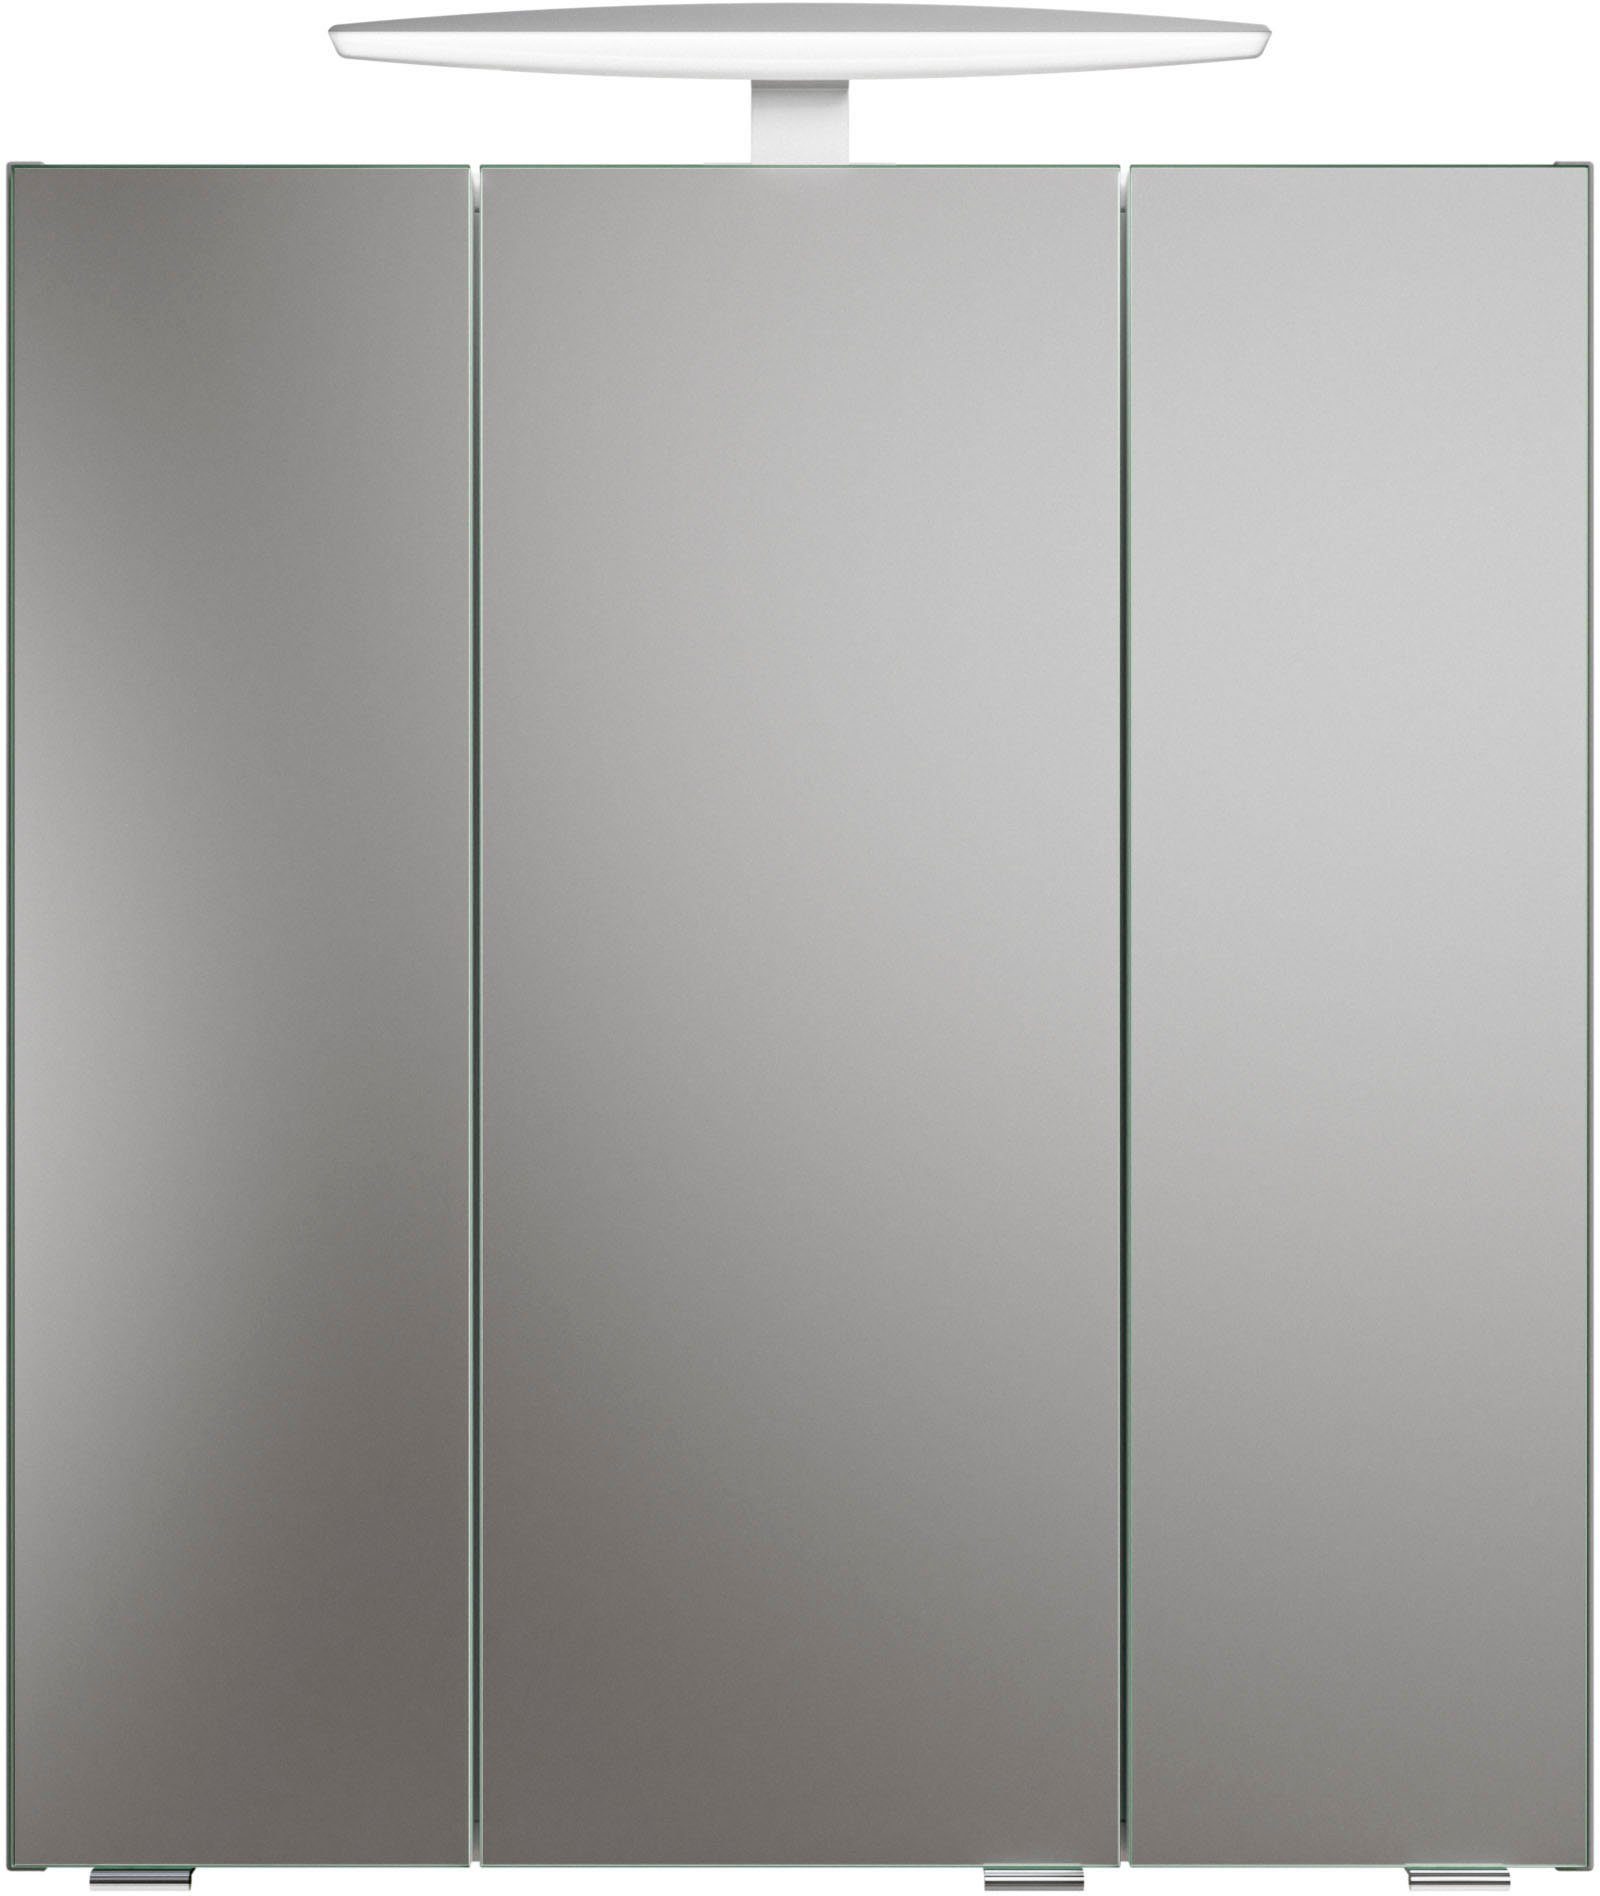 PELIPAL Badezimmerspiegelschrank Quickset 937, 1 Aufsatzleuchte